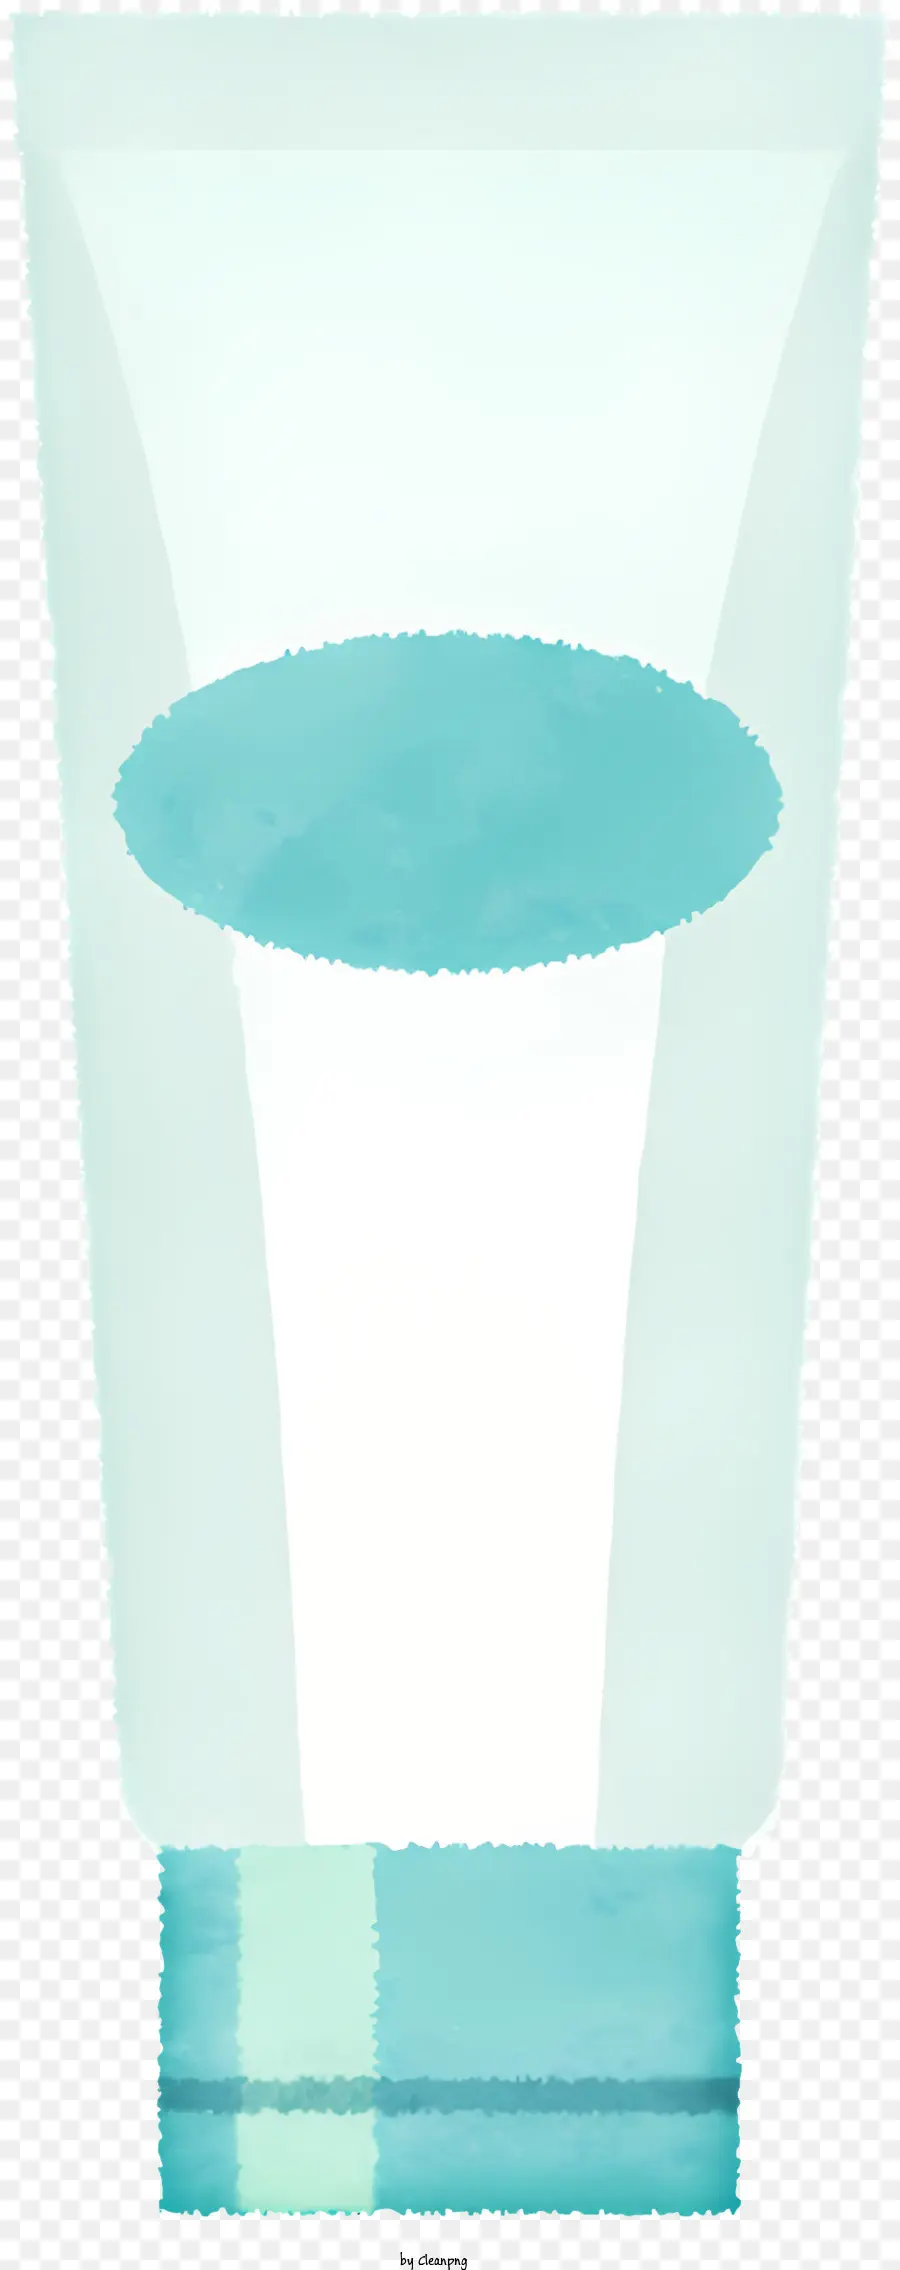 icon plastic container translucent plastic blue plastic strip transparent plastic cap